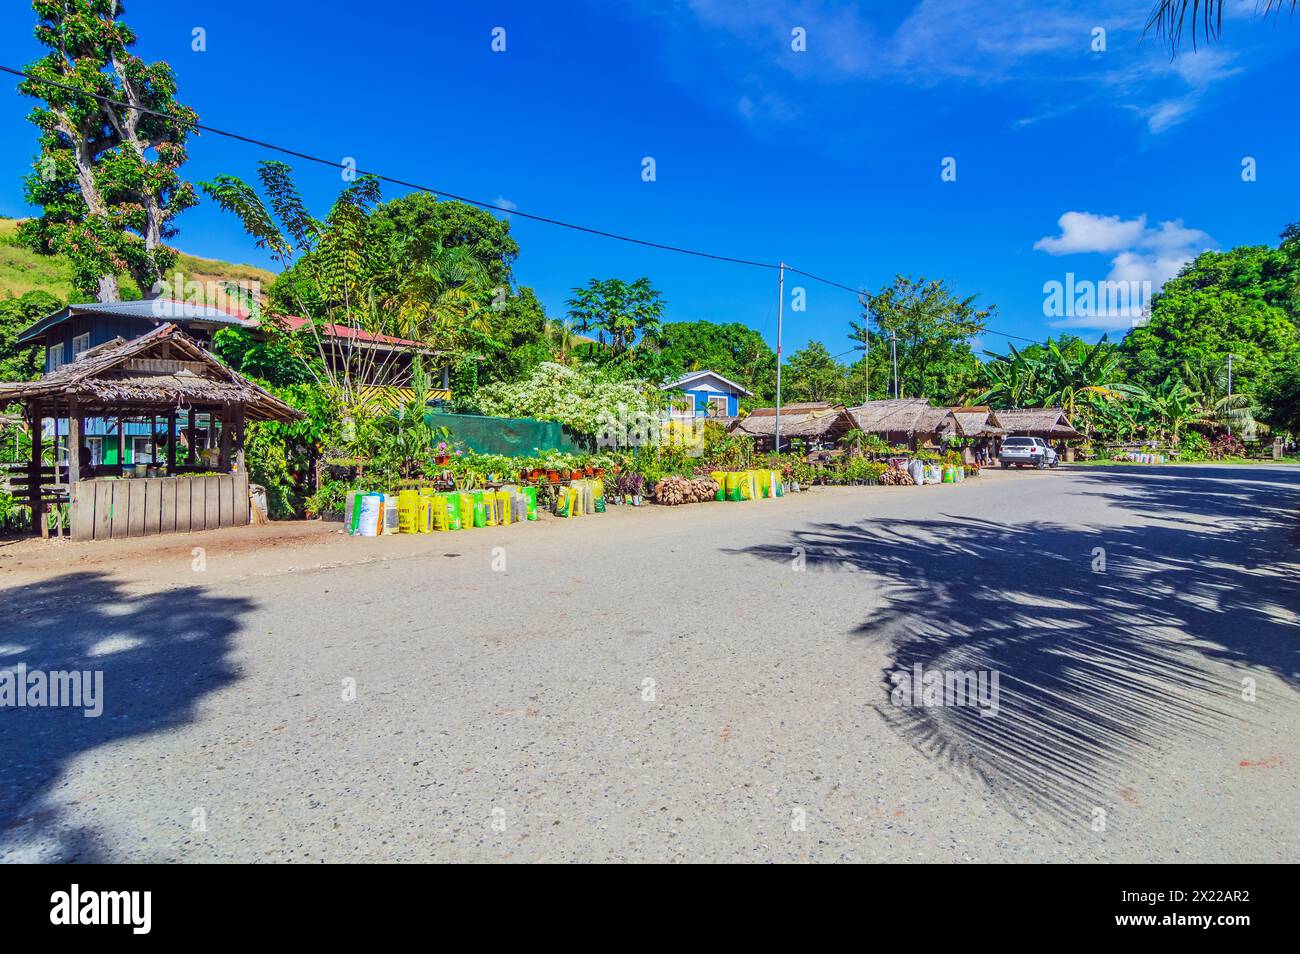 Blick auf den unabhängigen Inselstaat der Salomonen, hier die Hauptstadt Honiara und ihre Umgebung im südwestlichen Pazifik. Stockfoto